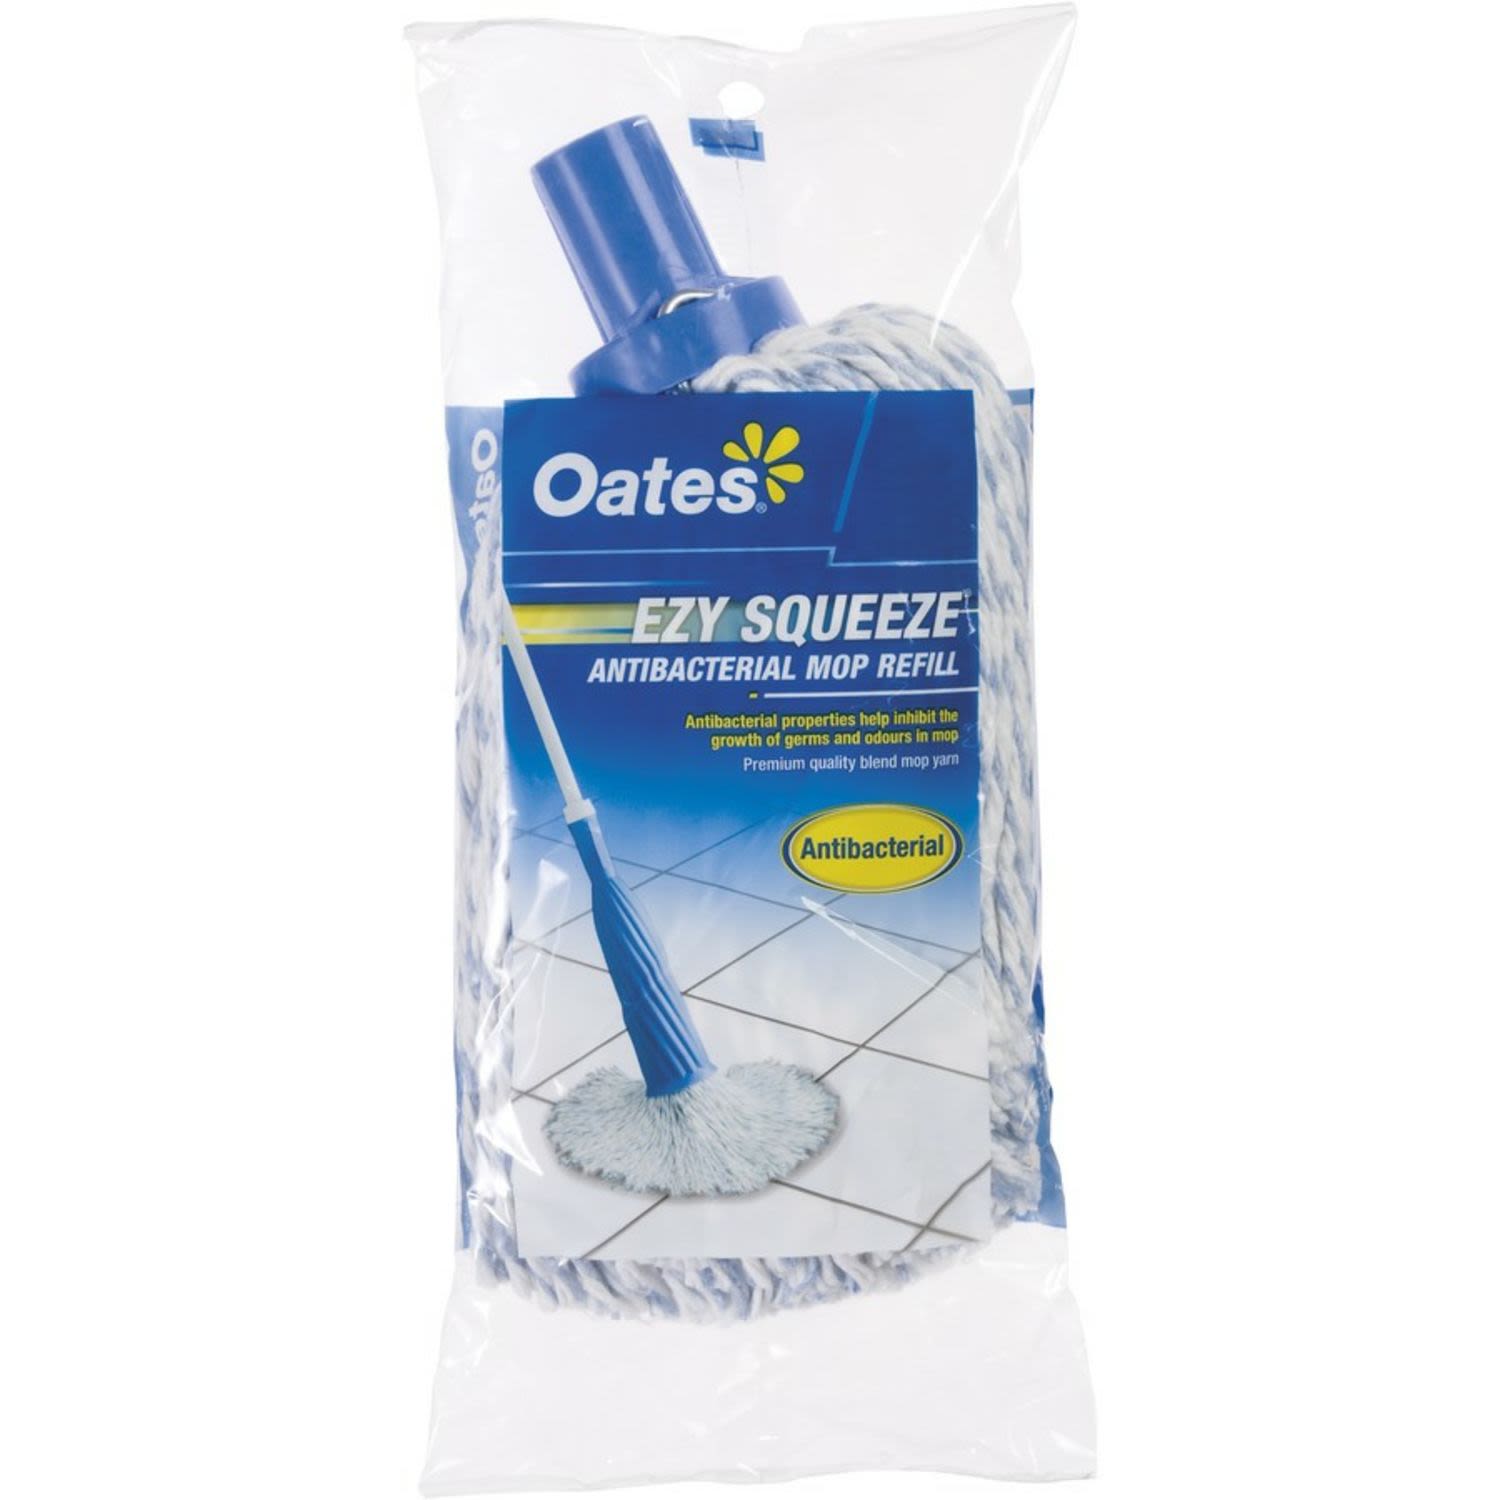 Oates Ezy Squeeze Mop Refill, 1 Each